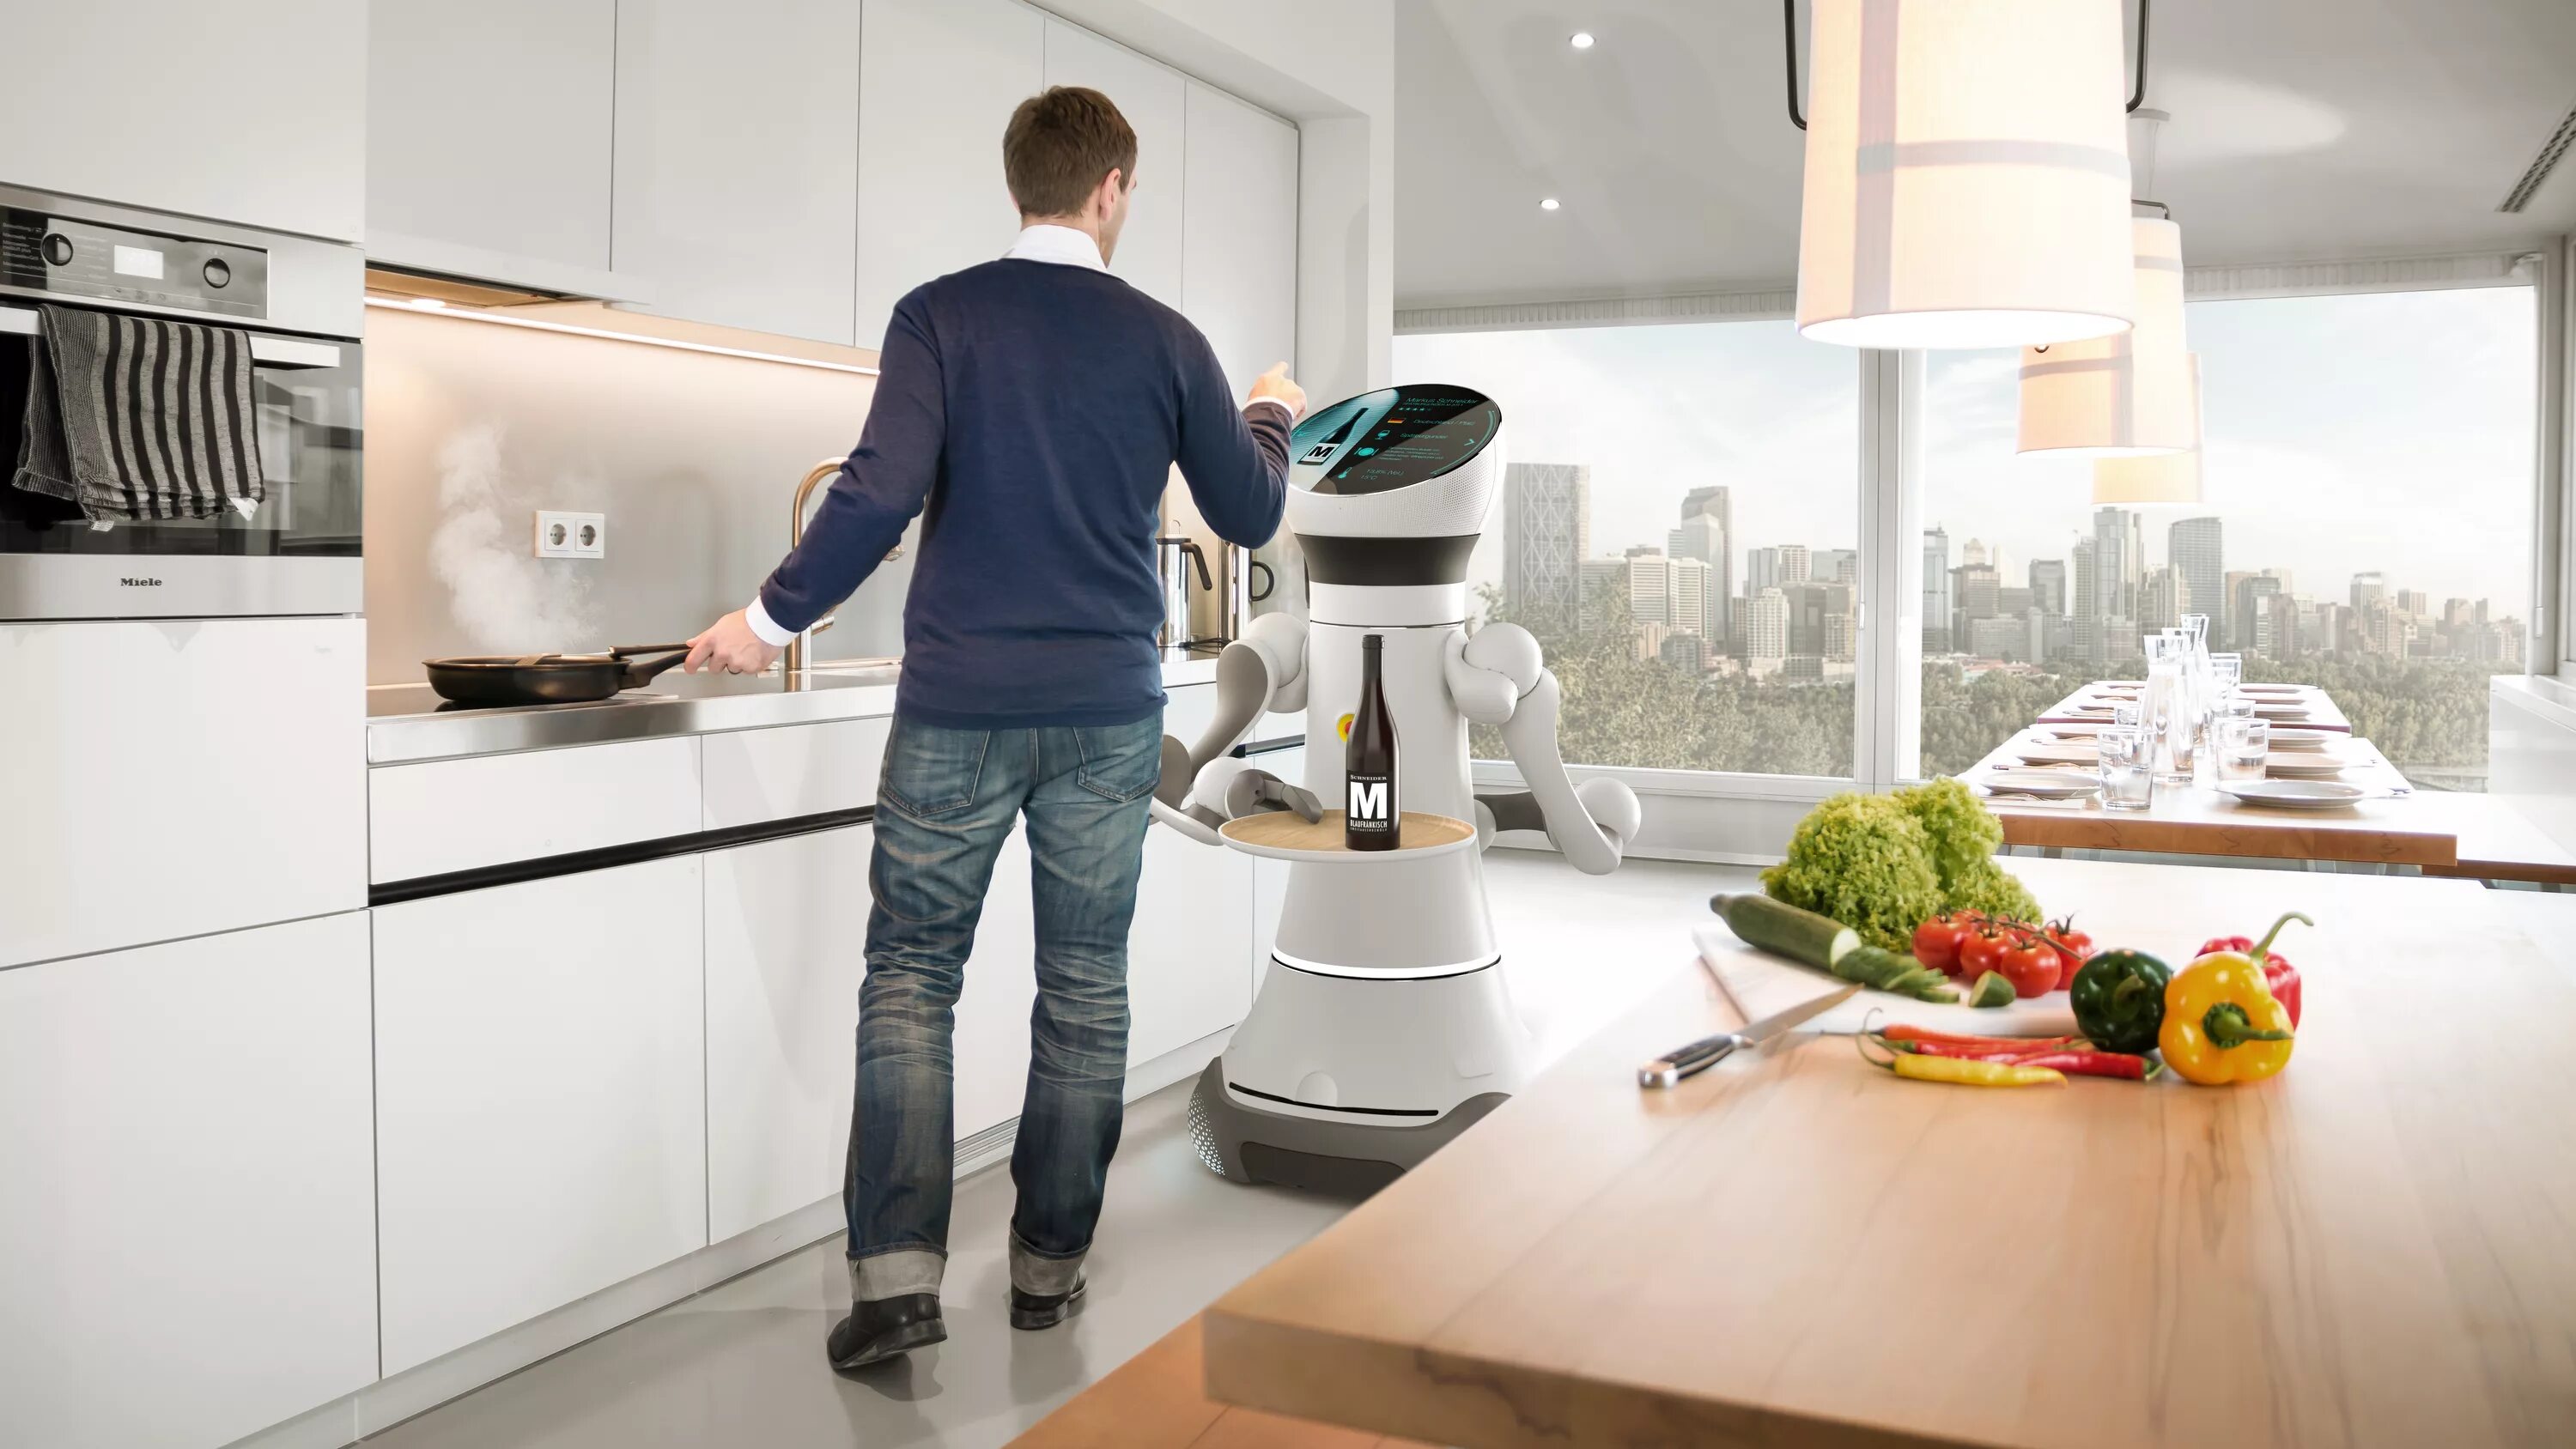 Современная бытовая техника. Кухонная техника будущего. Умная бытовая техника для кухни. Робот помощник на кухне. Домашнее хозяйство будущего